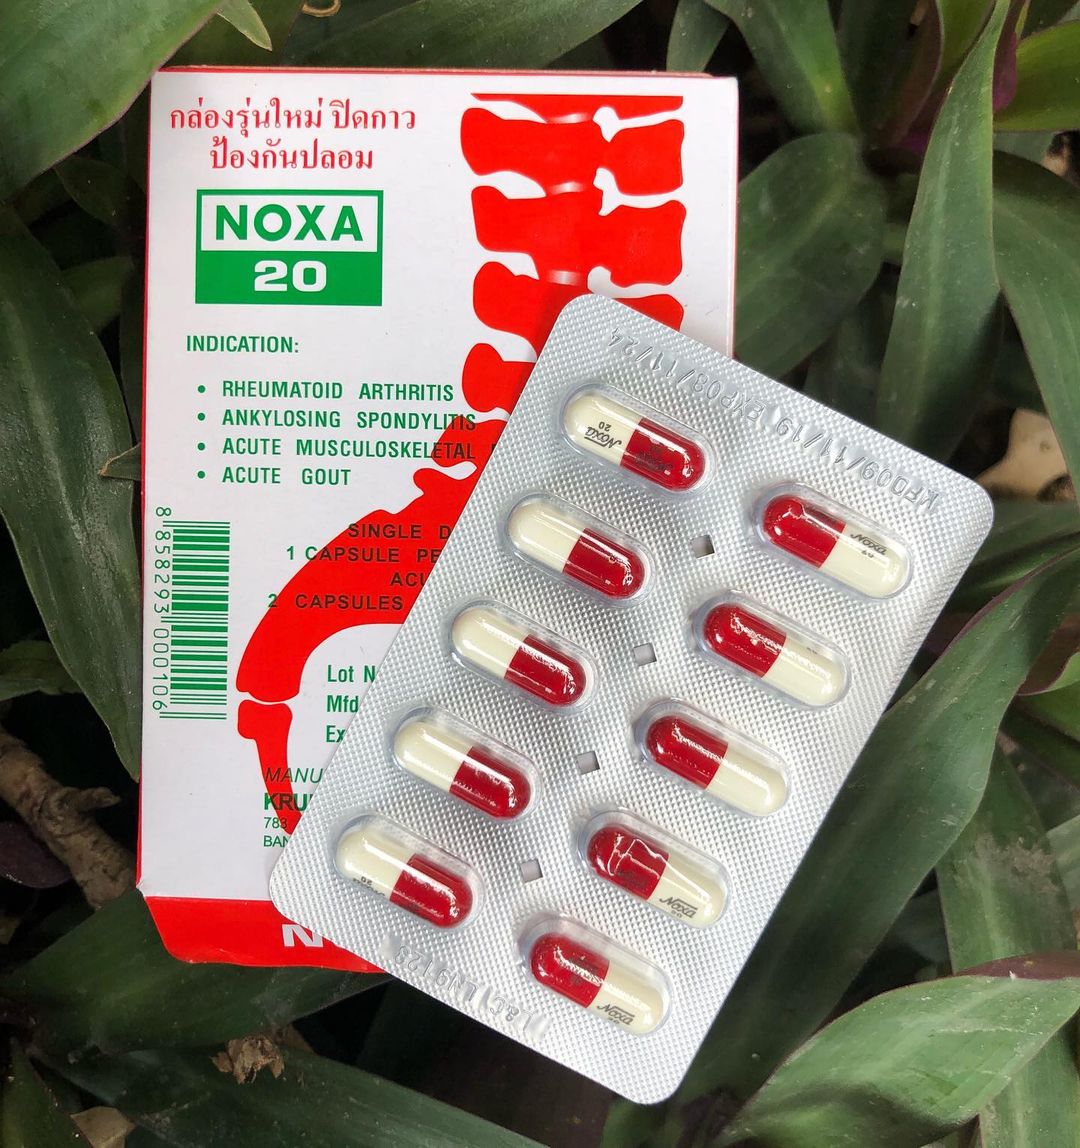 Купить Тайский препарат NOXA 20 (капсулы Нокса 20 для суставов и позвоночника), узнать отзывы, инструкция на русском языке, состав в интернет магазине Товаров из Тайланда OZBM.RU